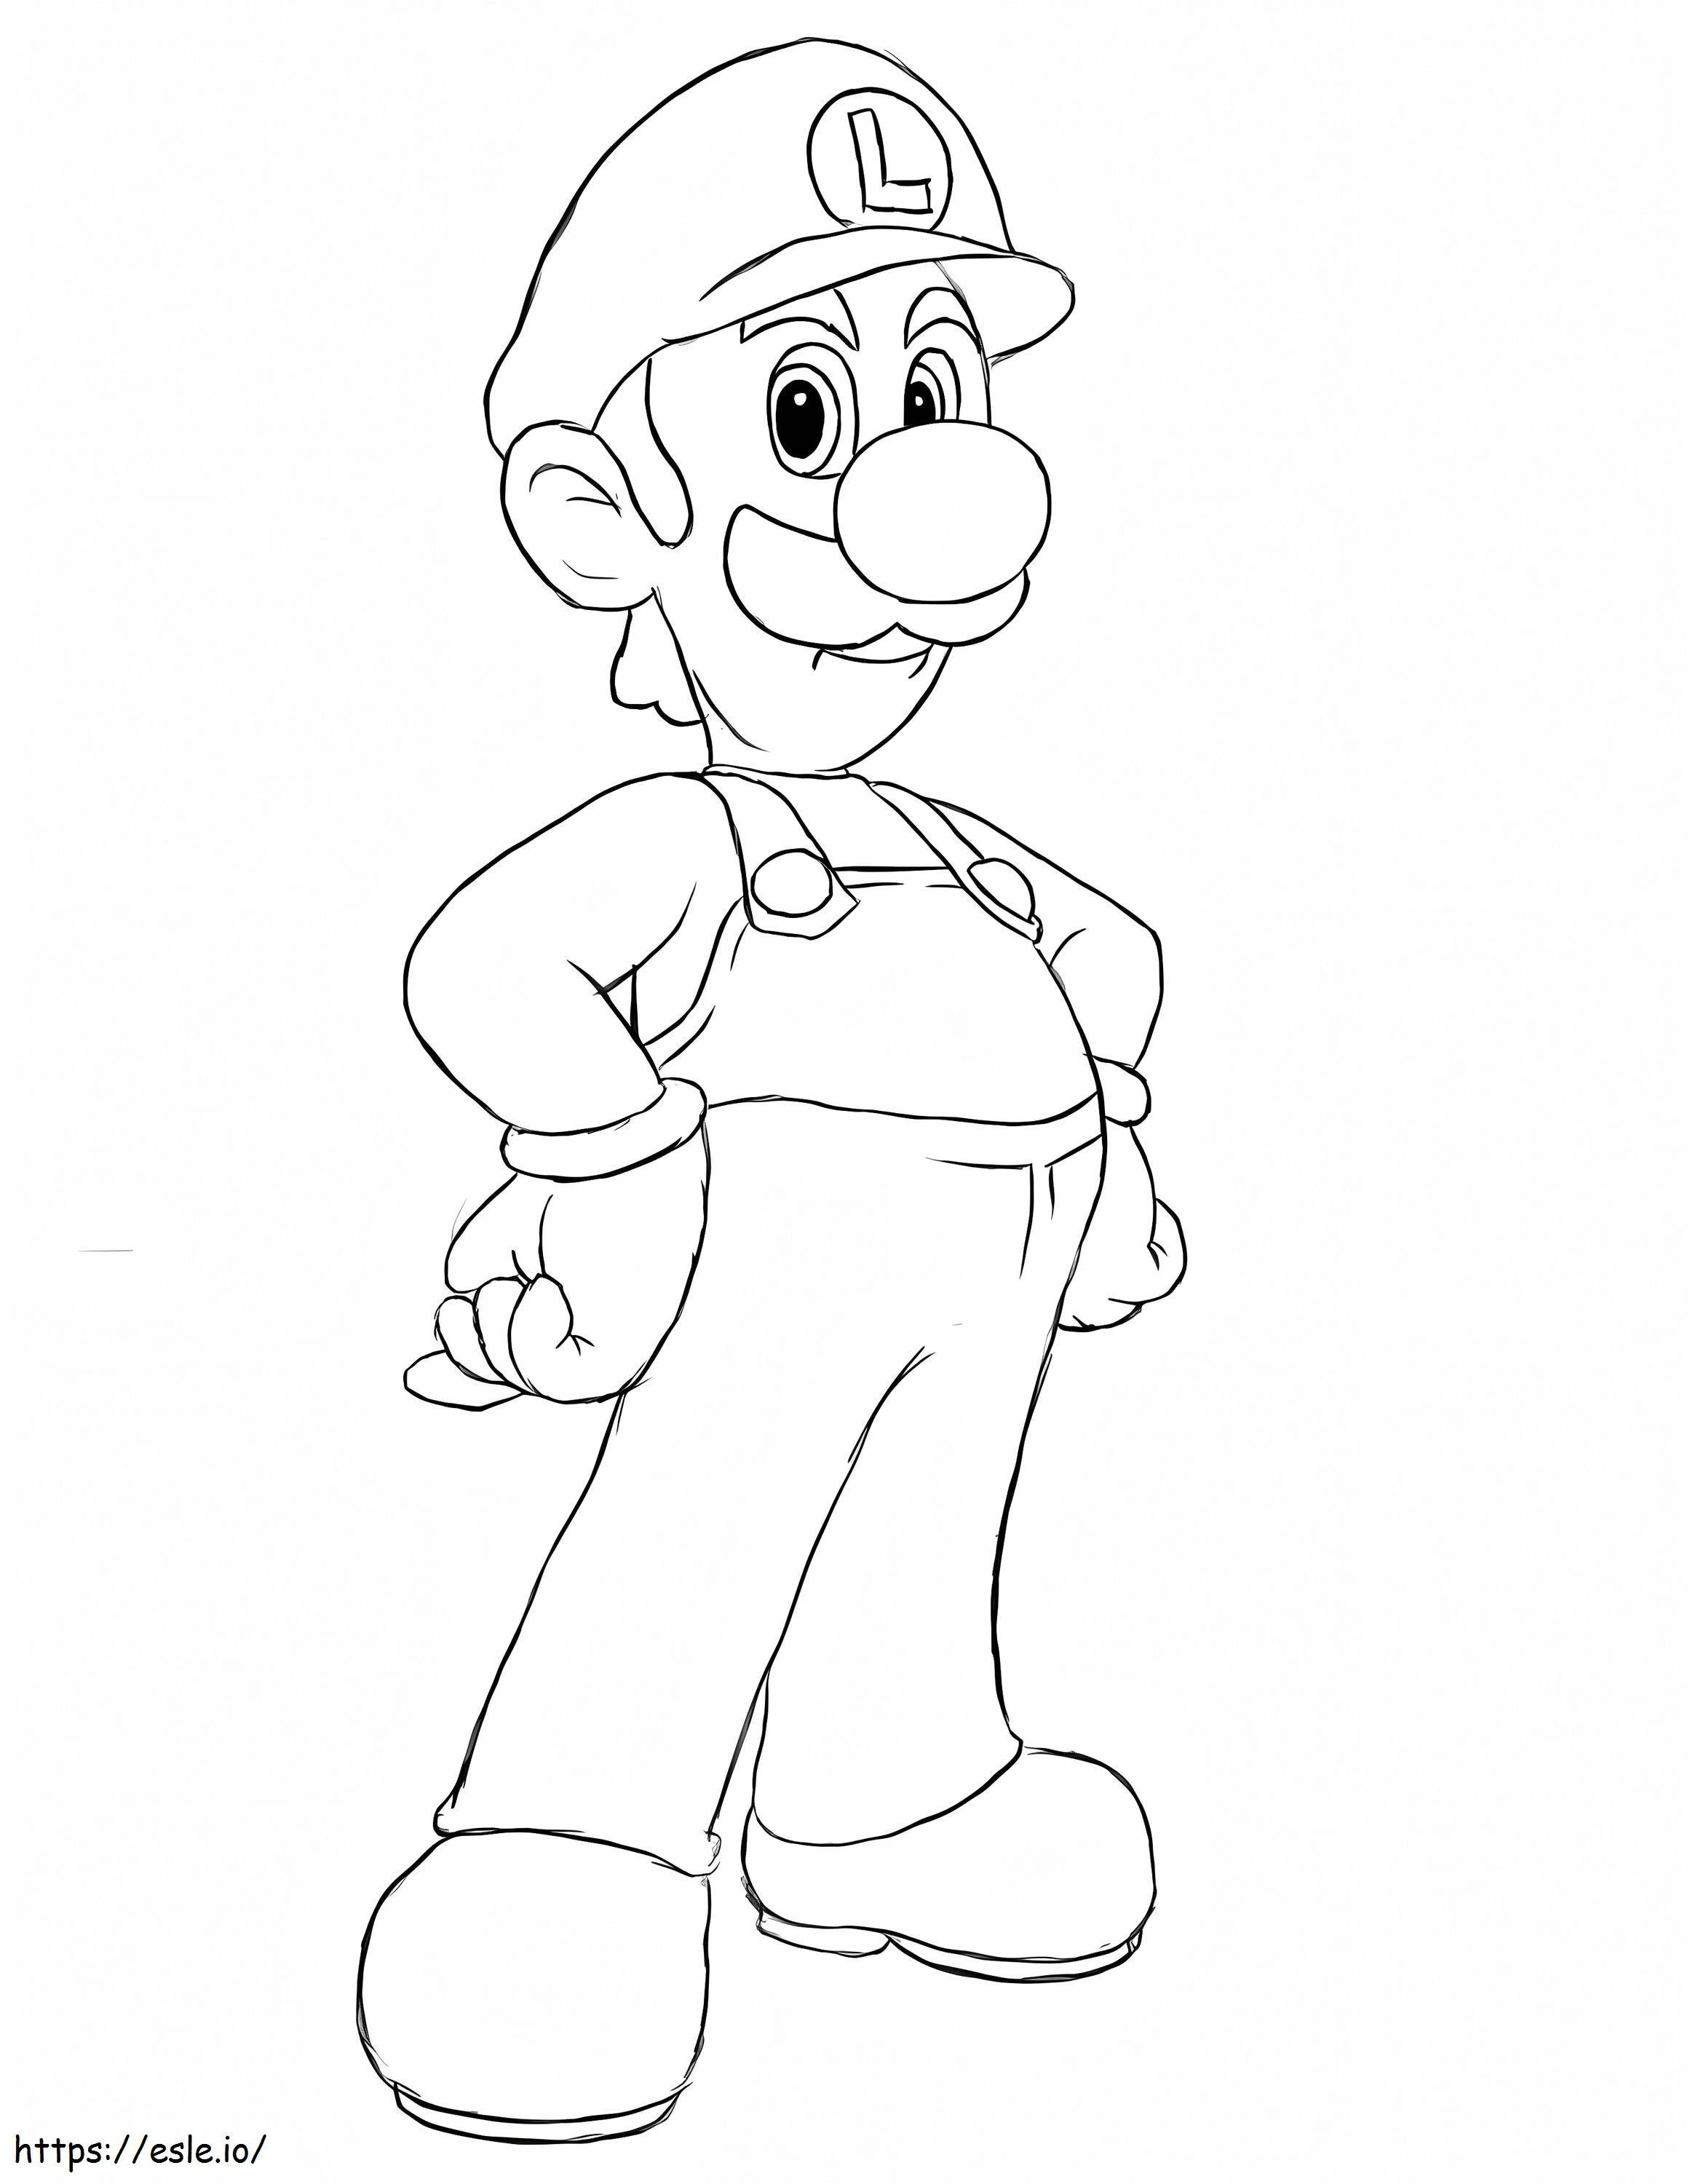 Louis De Super Mario 4 de colorat